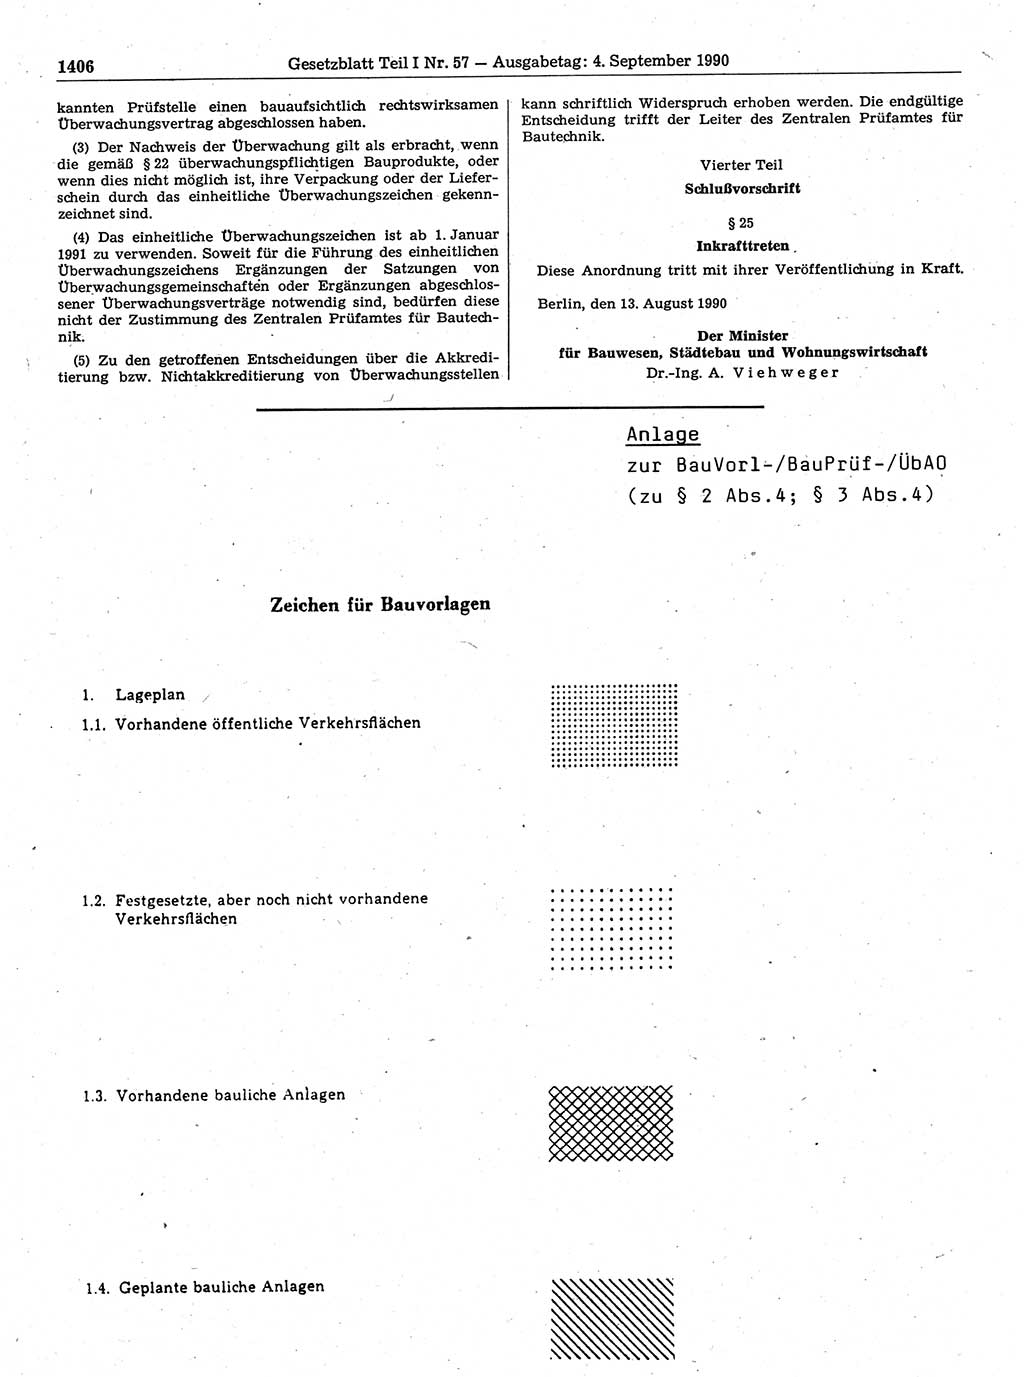 Gesetzblatt (GBl.) der Deutschen Demokratischen Republik (DDR) Teil Ⅰ 1990, Seite 1406 (GBl. DDR Ⅰ 1990, S. 1406)